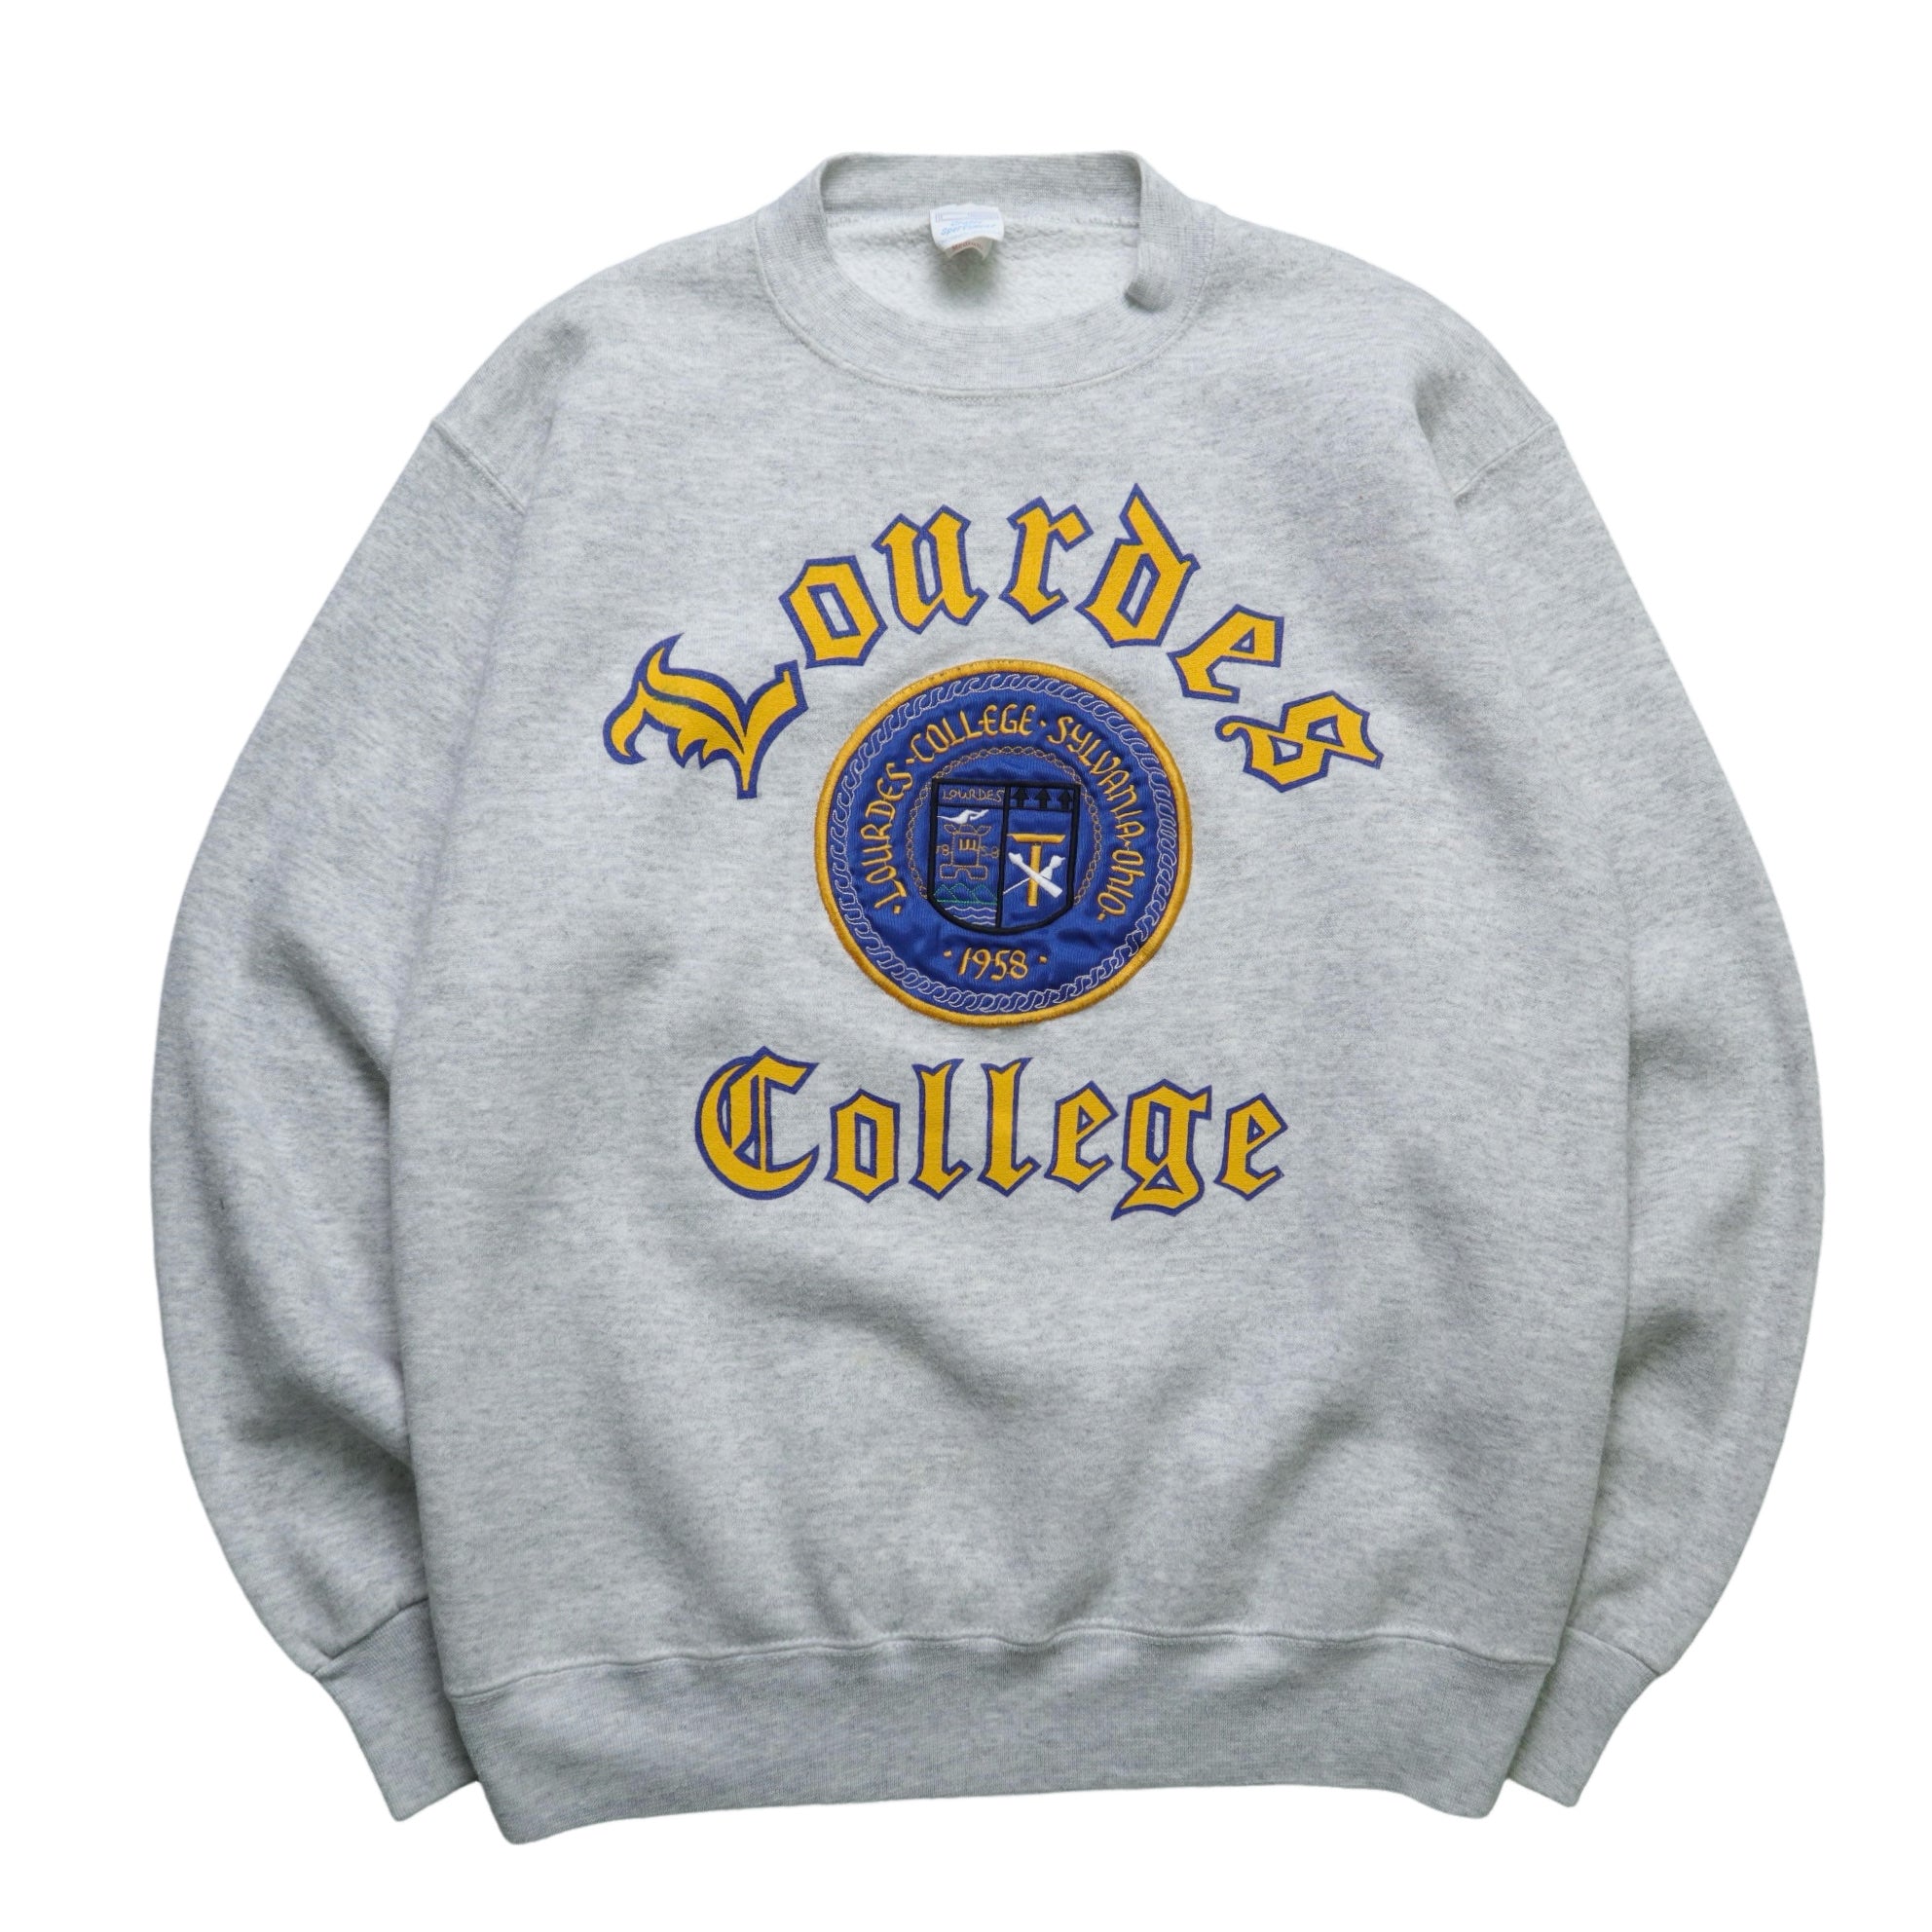 Custom Vintage Tee Beading Sweatshirt, College Apparel, College Sweatshirt,  Vintage Style, College Merch, Gameday Sweatshirt, College Merch 